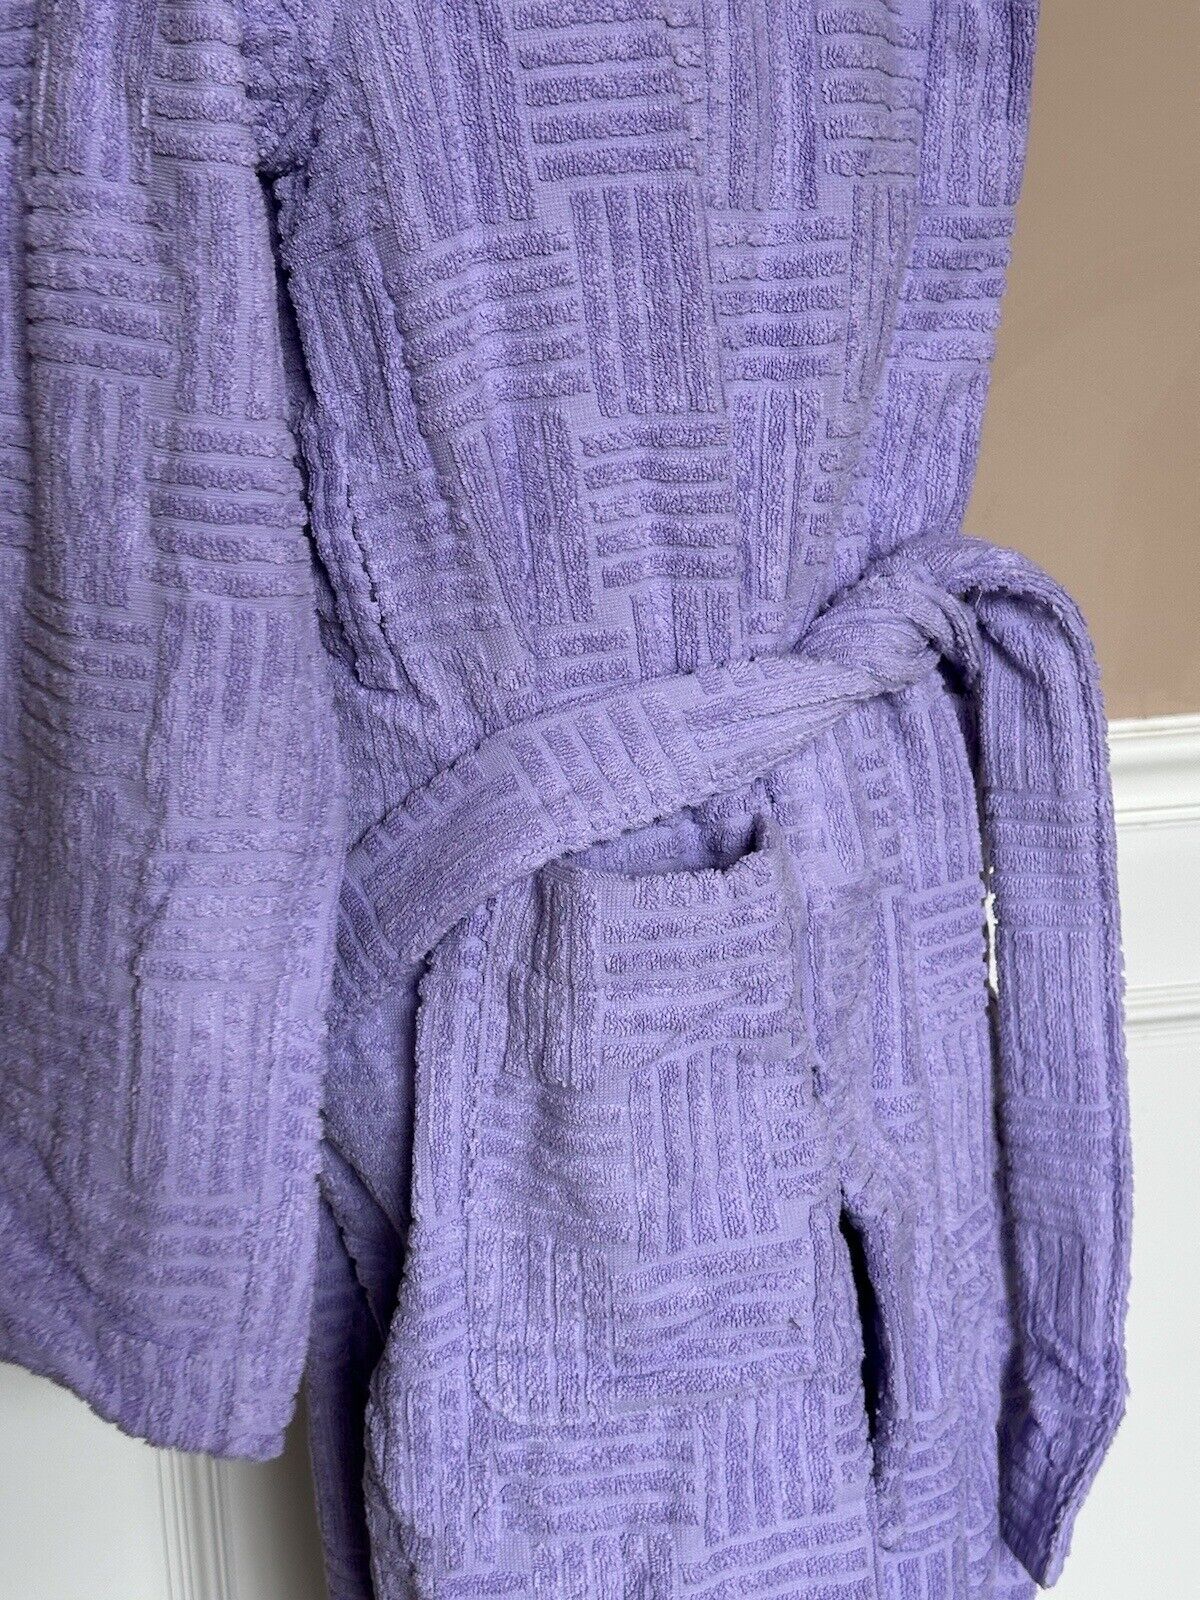 NWT 700 долларов США Bottega Veneta Хлопковый махровый банный халат Темно-фиолетовый средний 723607 Италия